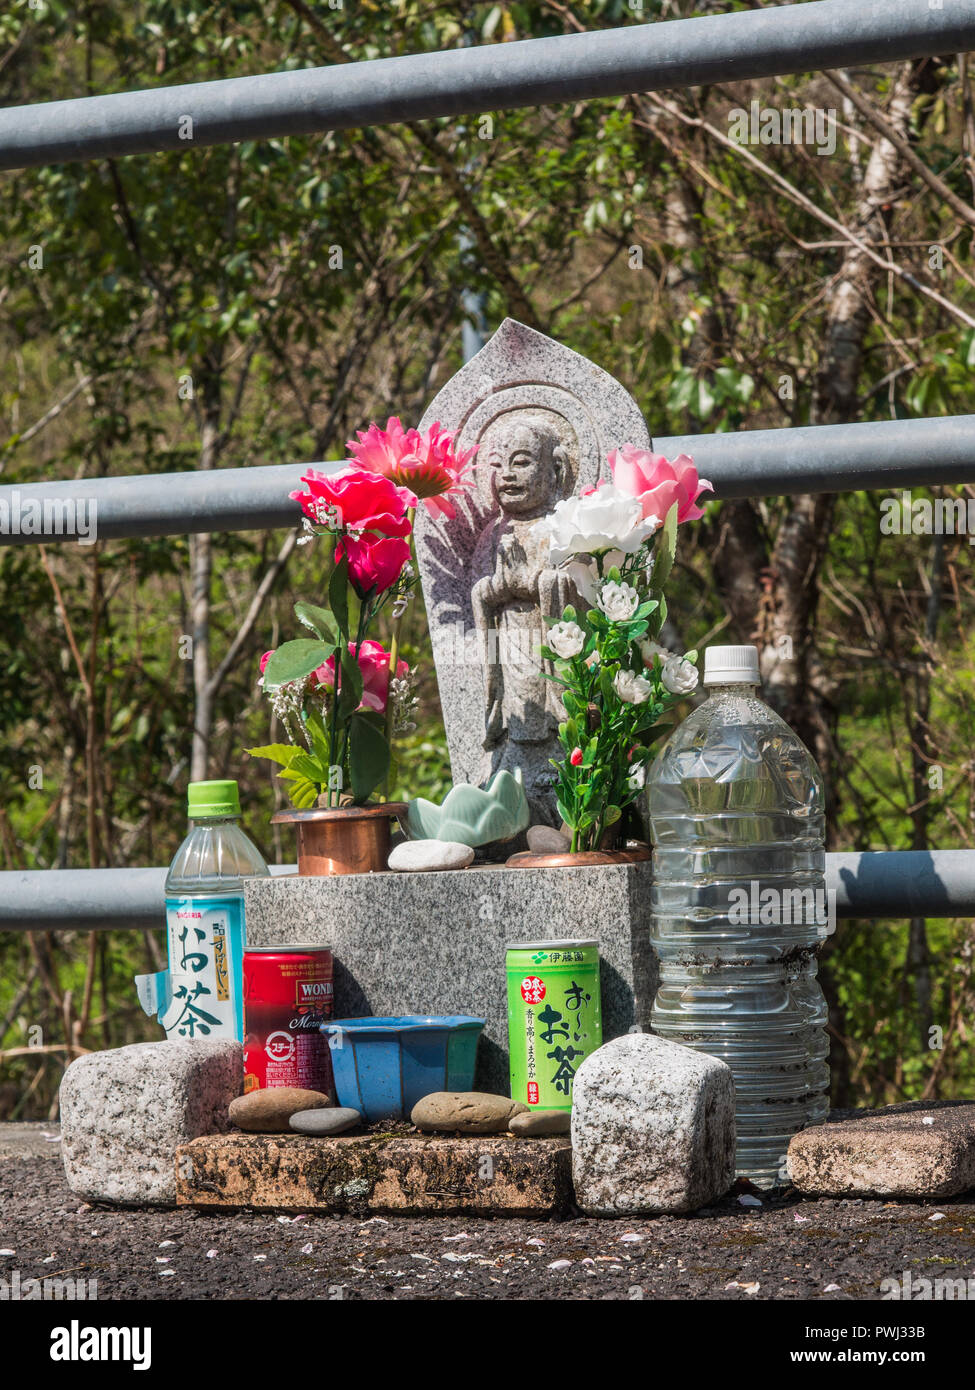 Route de culte, une statue bouddhiste avec des fleurs en plastique, des offrandes de cailloux, boissons, Shimanto, Kochi, Shikoku, Japon Banque D'Images